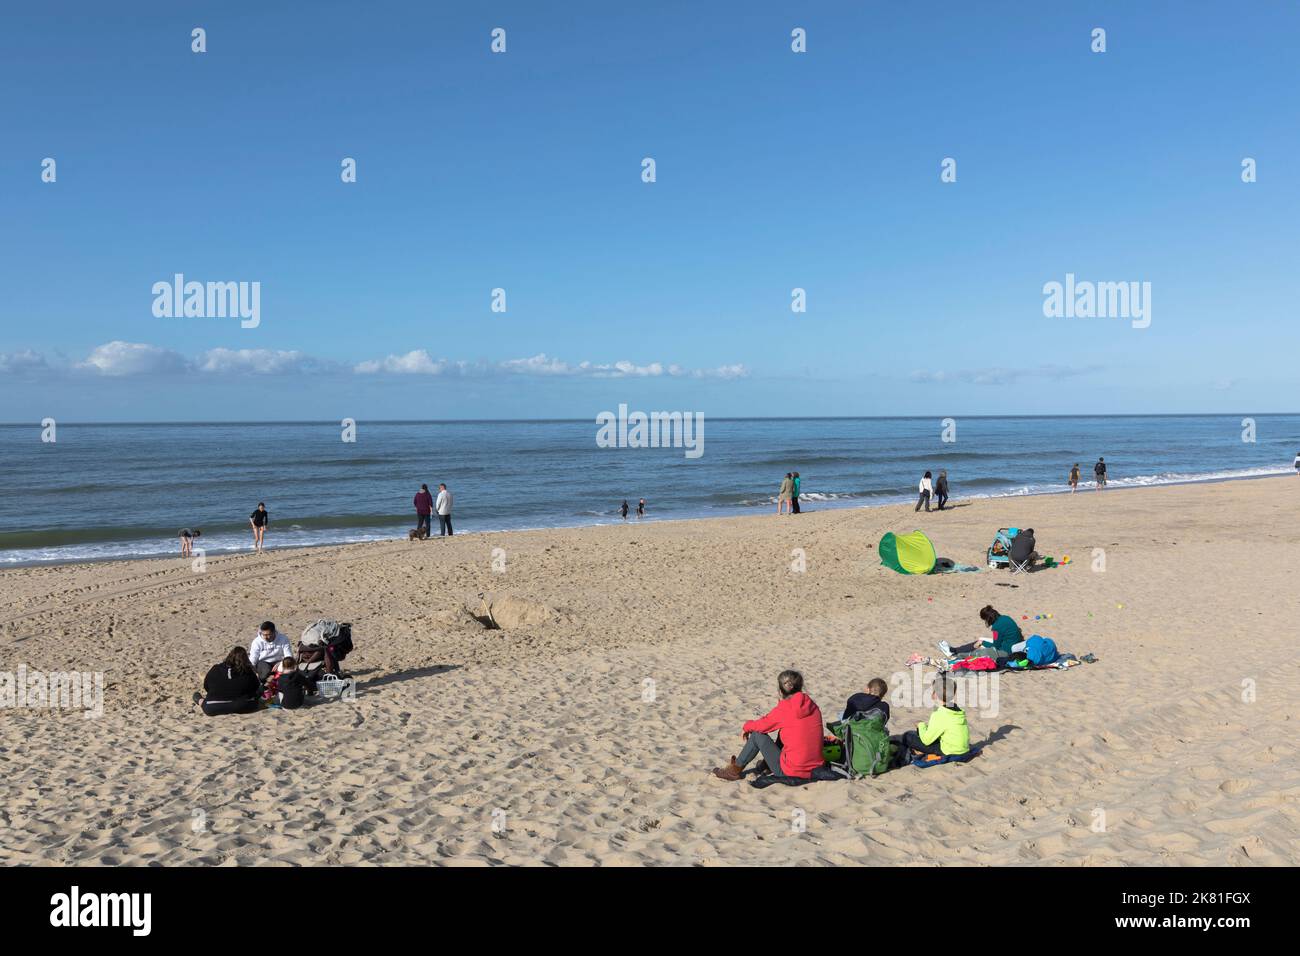 Niederlande, Zeeland, am Strand in Oostkapelle auf der Halbinsel Walcheren. Niederlande, Zeeland, am Strand bei Oostkapelle auf Walcheren. Stockfoto